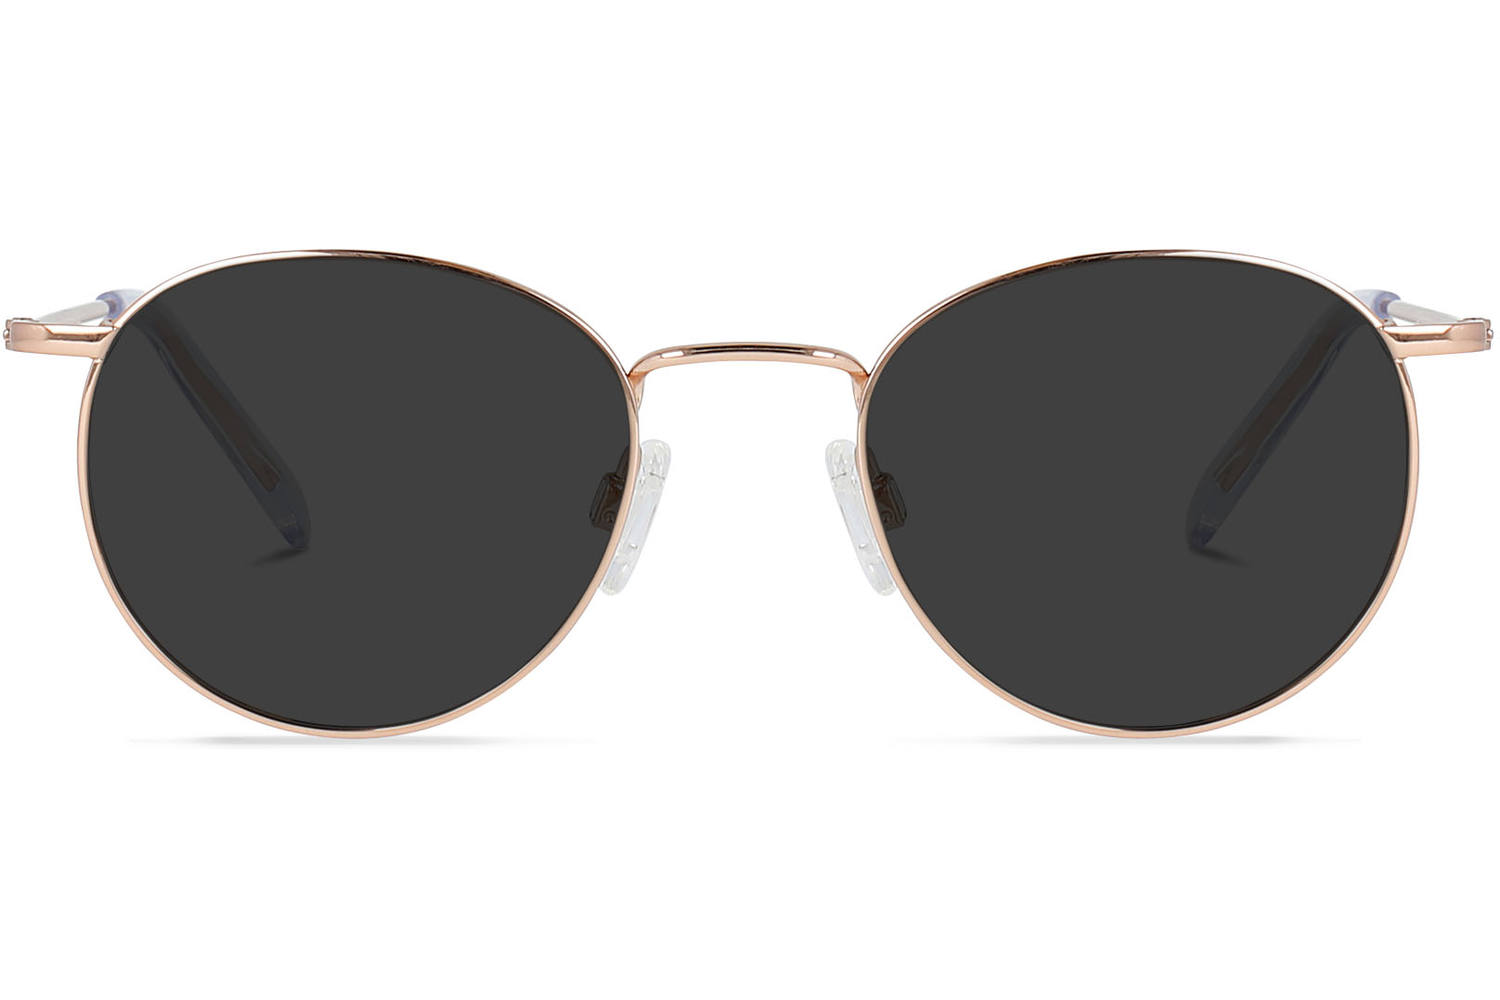 Ronde zonnebril bruin-donkerbruin straat-mode uitstraling Accessoires Zonnebrillen Ronde zonnebrillen 